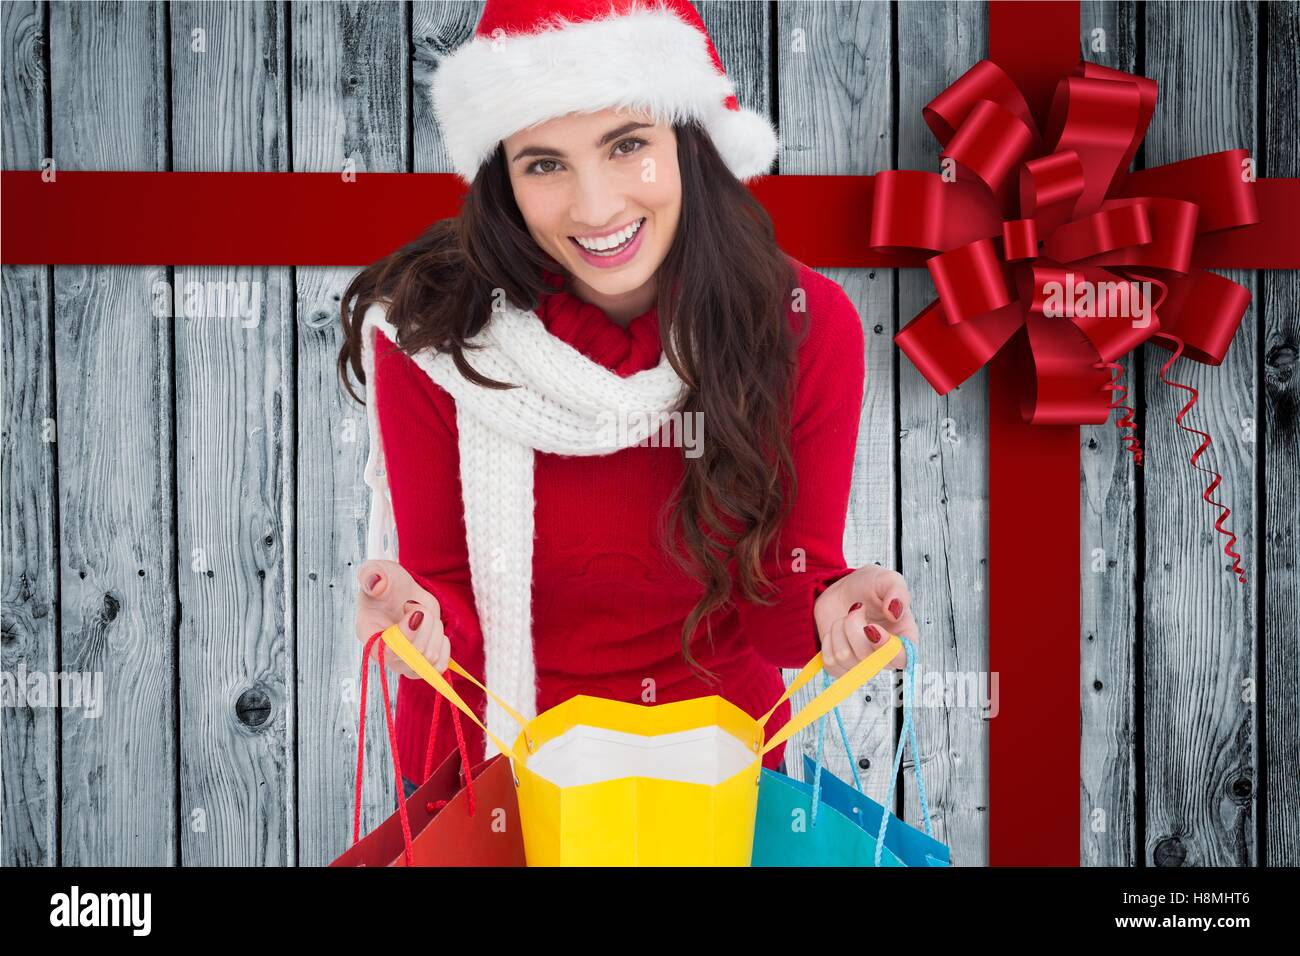 Belle femme en costume santa holding shopping bags Banque D'Images